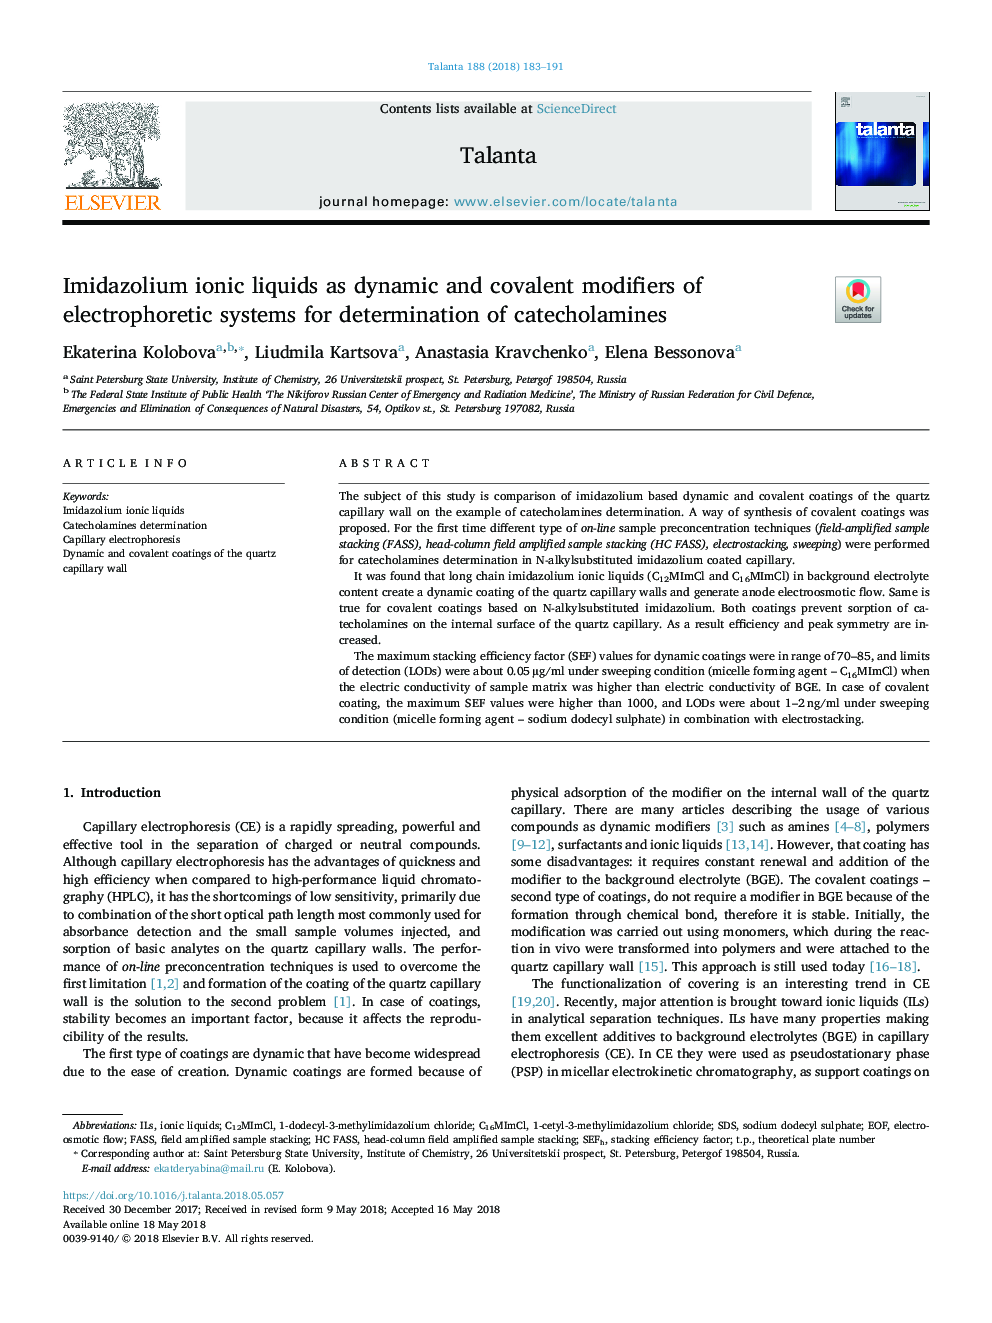 مایعات یونیزاسیون ایمیدازولیوم به عنوان اصلاح کننده های پویا و کووالانتی از سیستم های الکتروفورتیک برای تعیین کاتلول آمین ها 